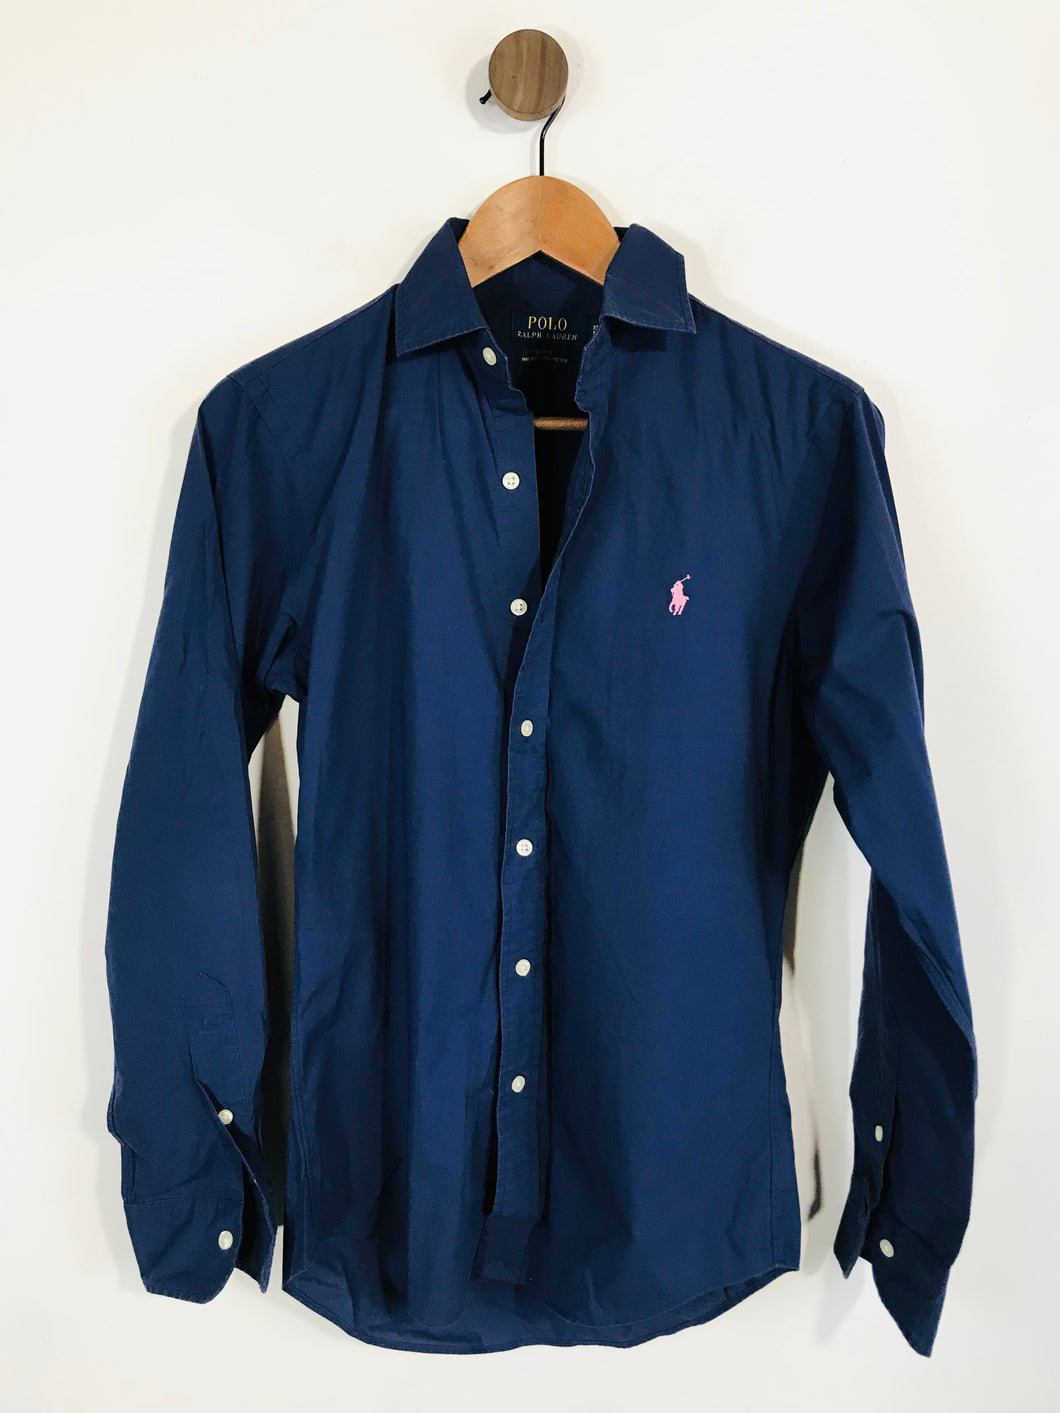 Polo Ralph Lauren Women's Smart Button-Up Shirt | XS UK6-8 | Blue